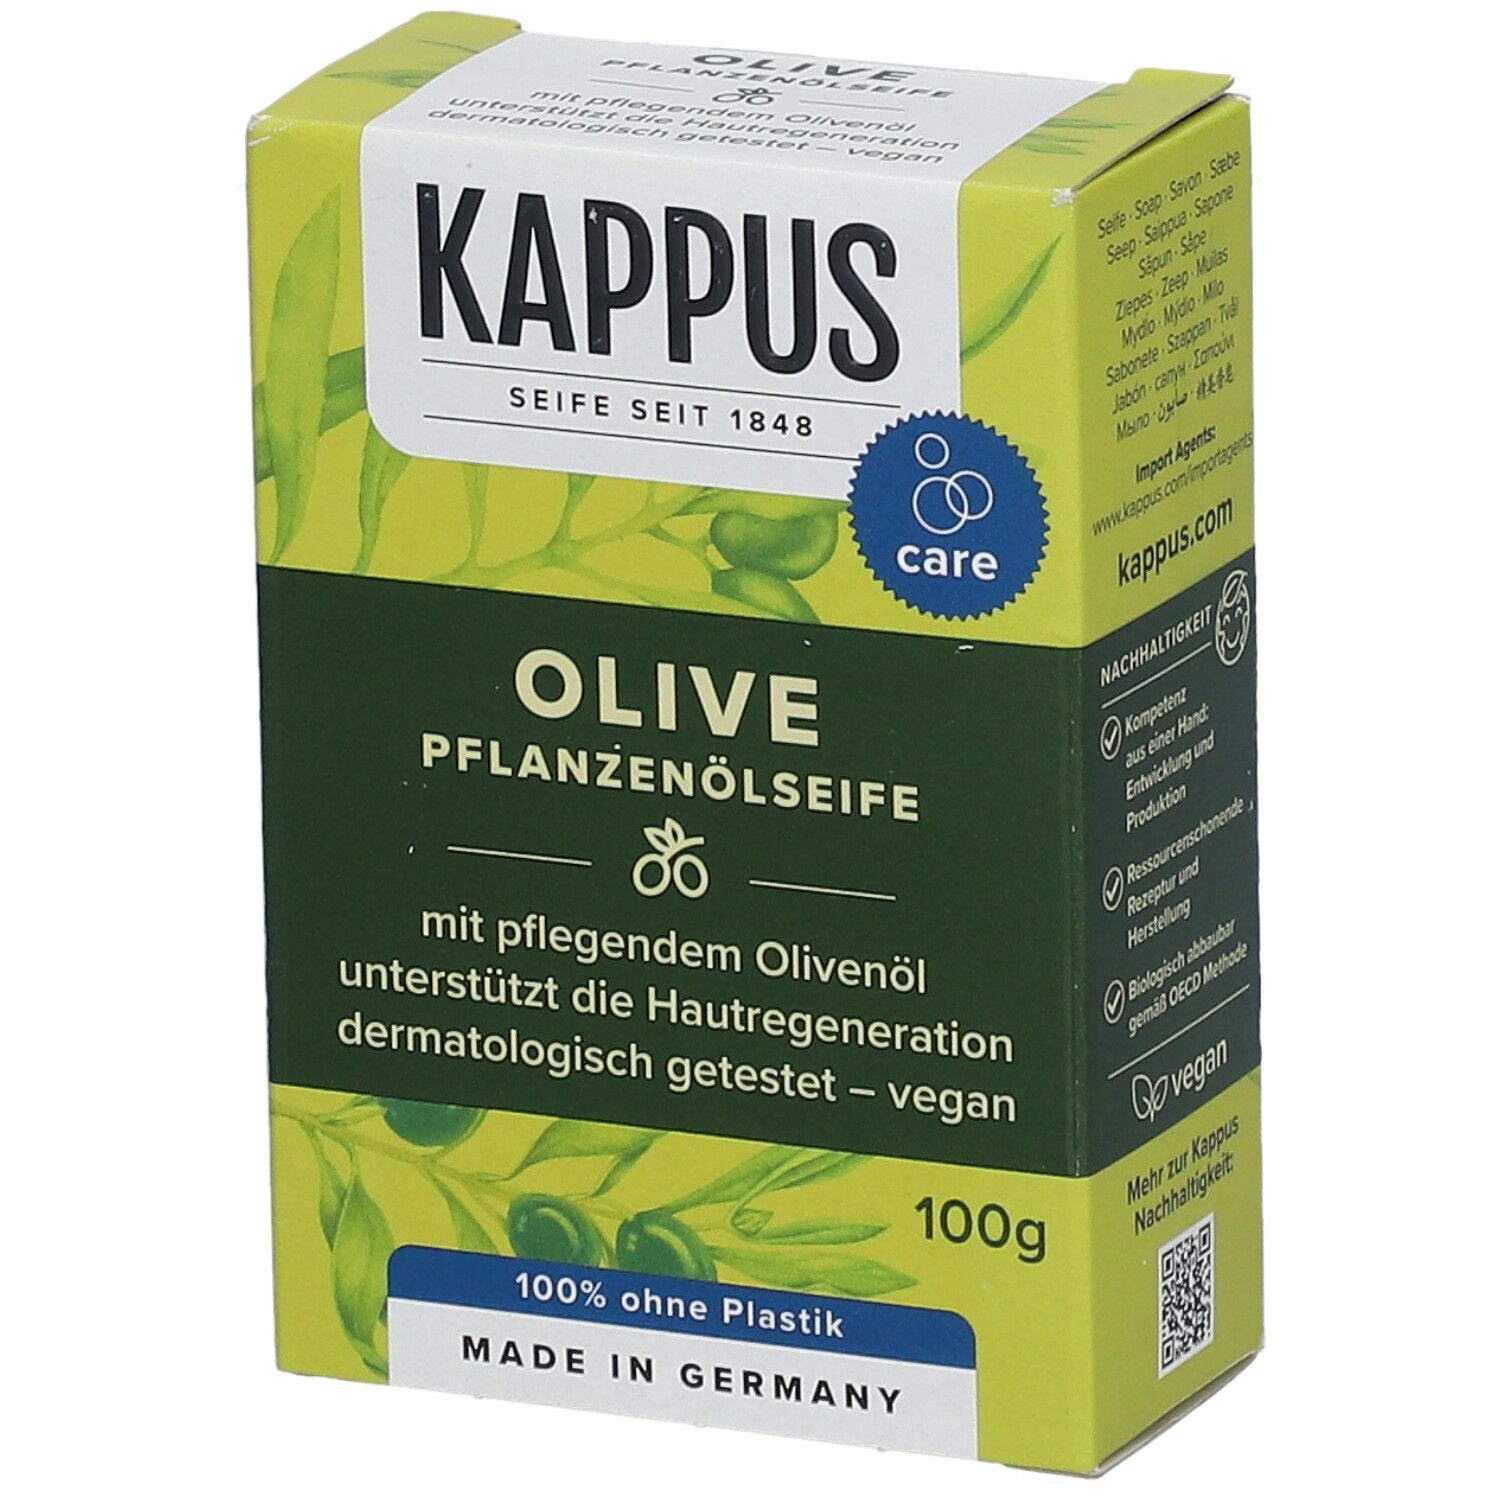 Kappus Olivenöl Seife